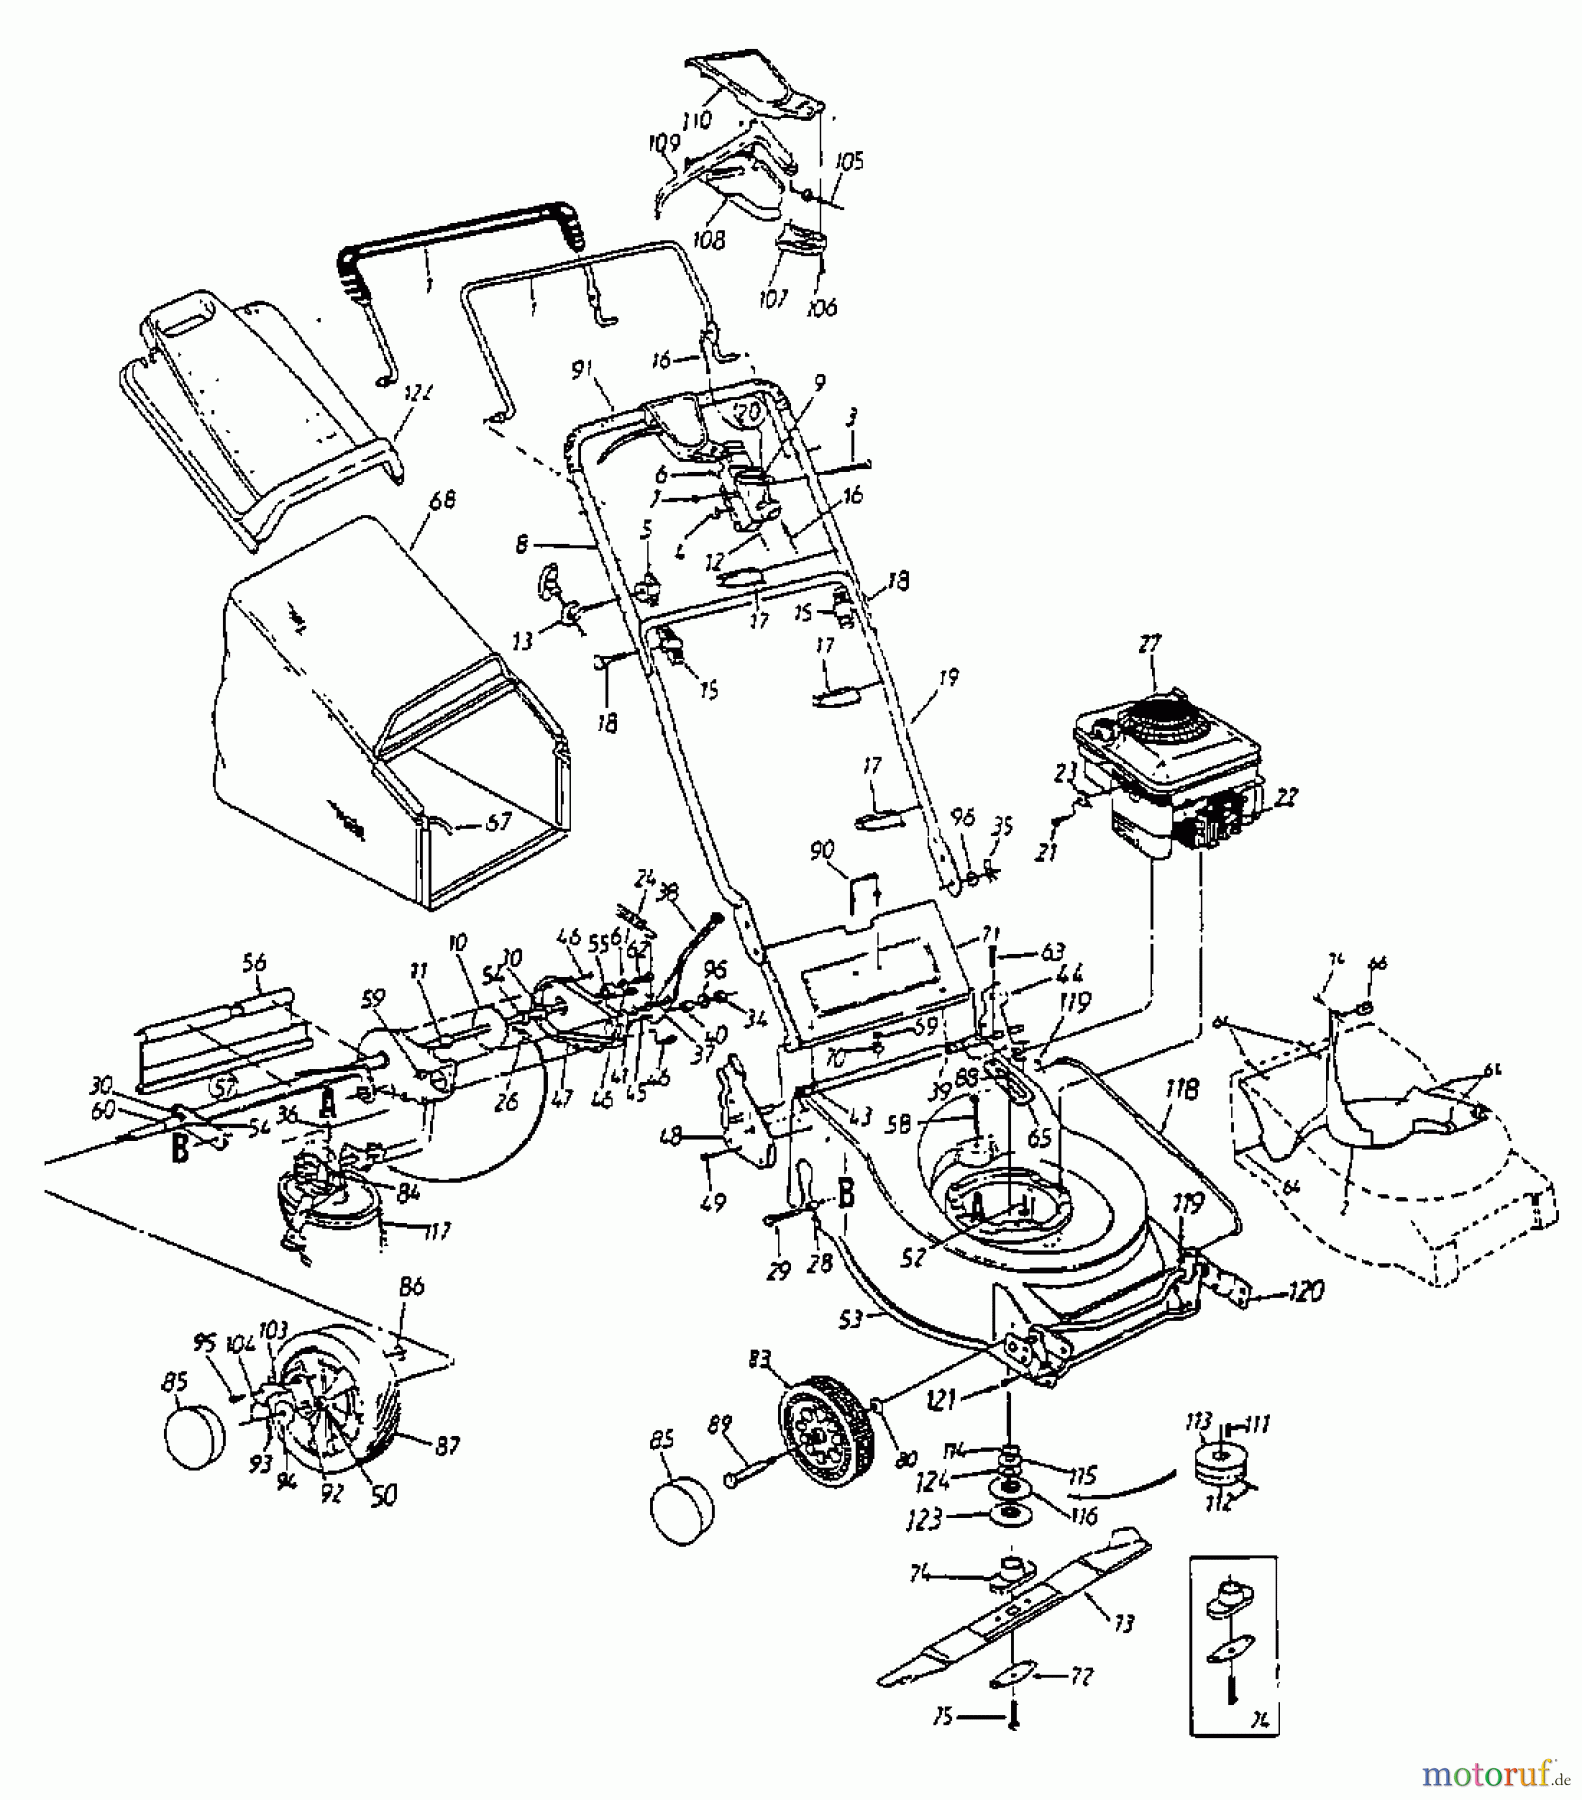  Lawnflite Motormäher mit Antrieb 384 SP 12B-698C611  (1999) Grundgerät